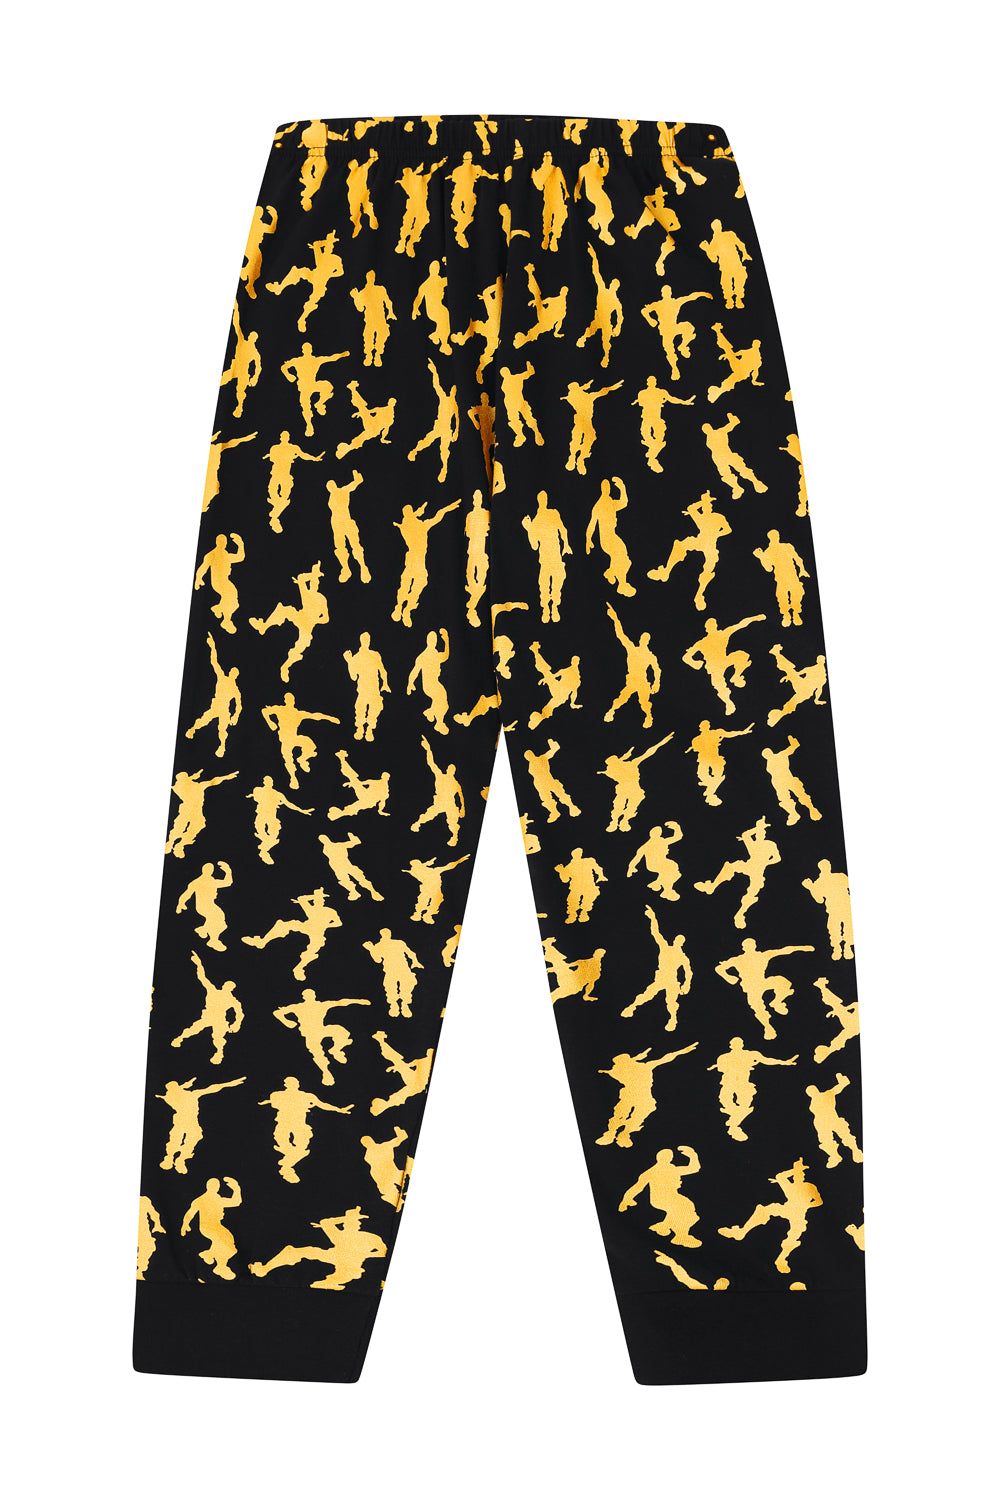 Legend Emote Dance Gaming Gold Long Pyjamas - Pyjamas.com